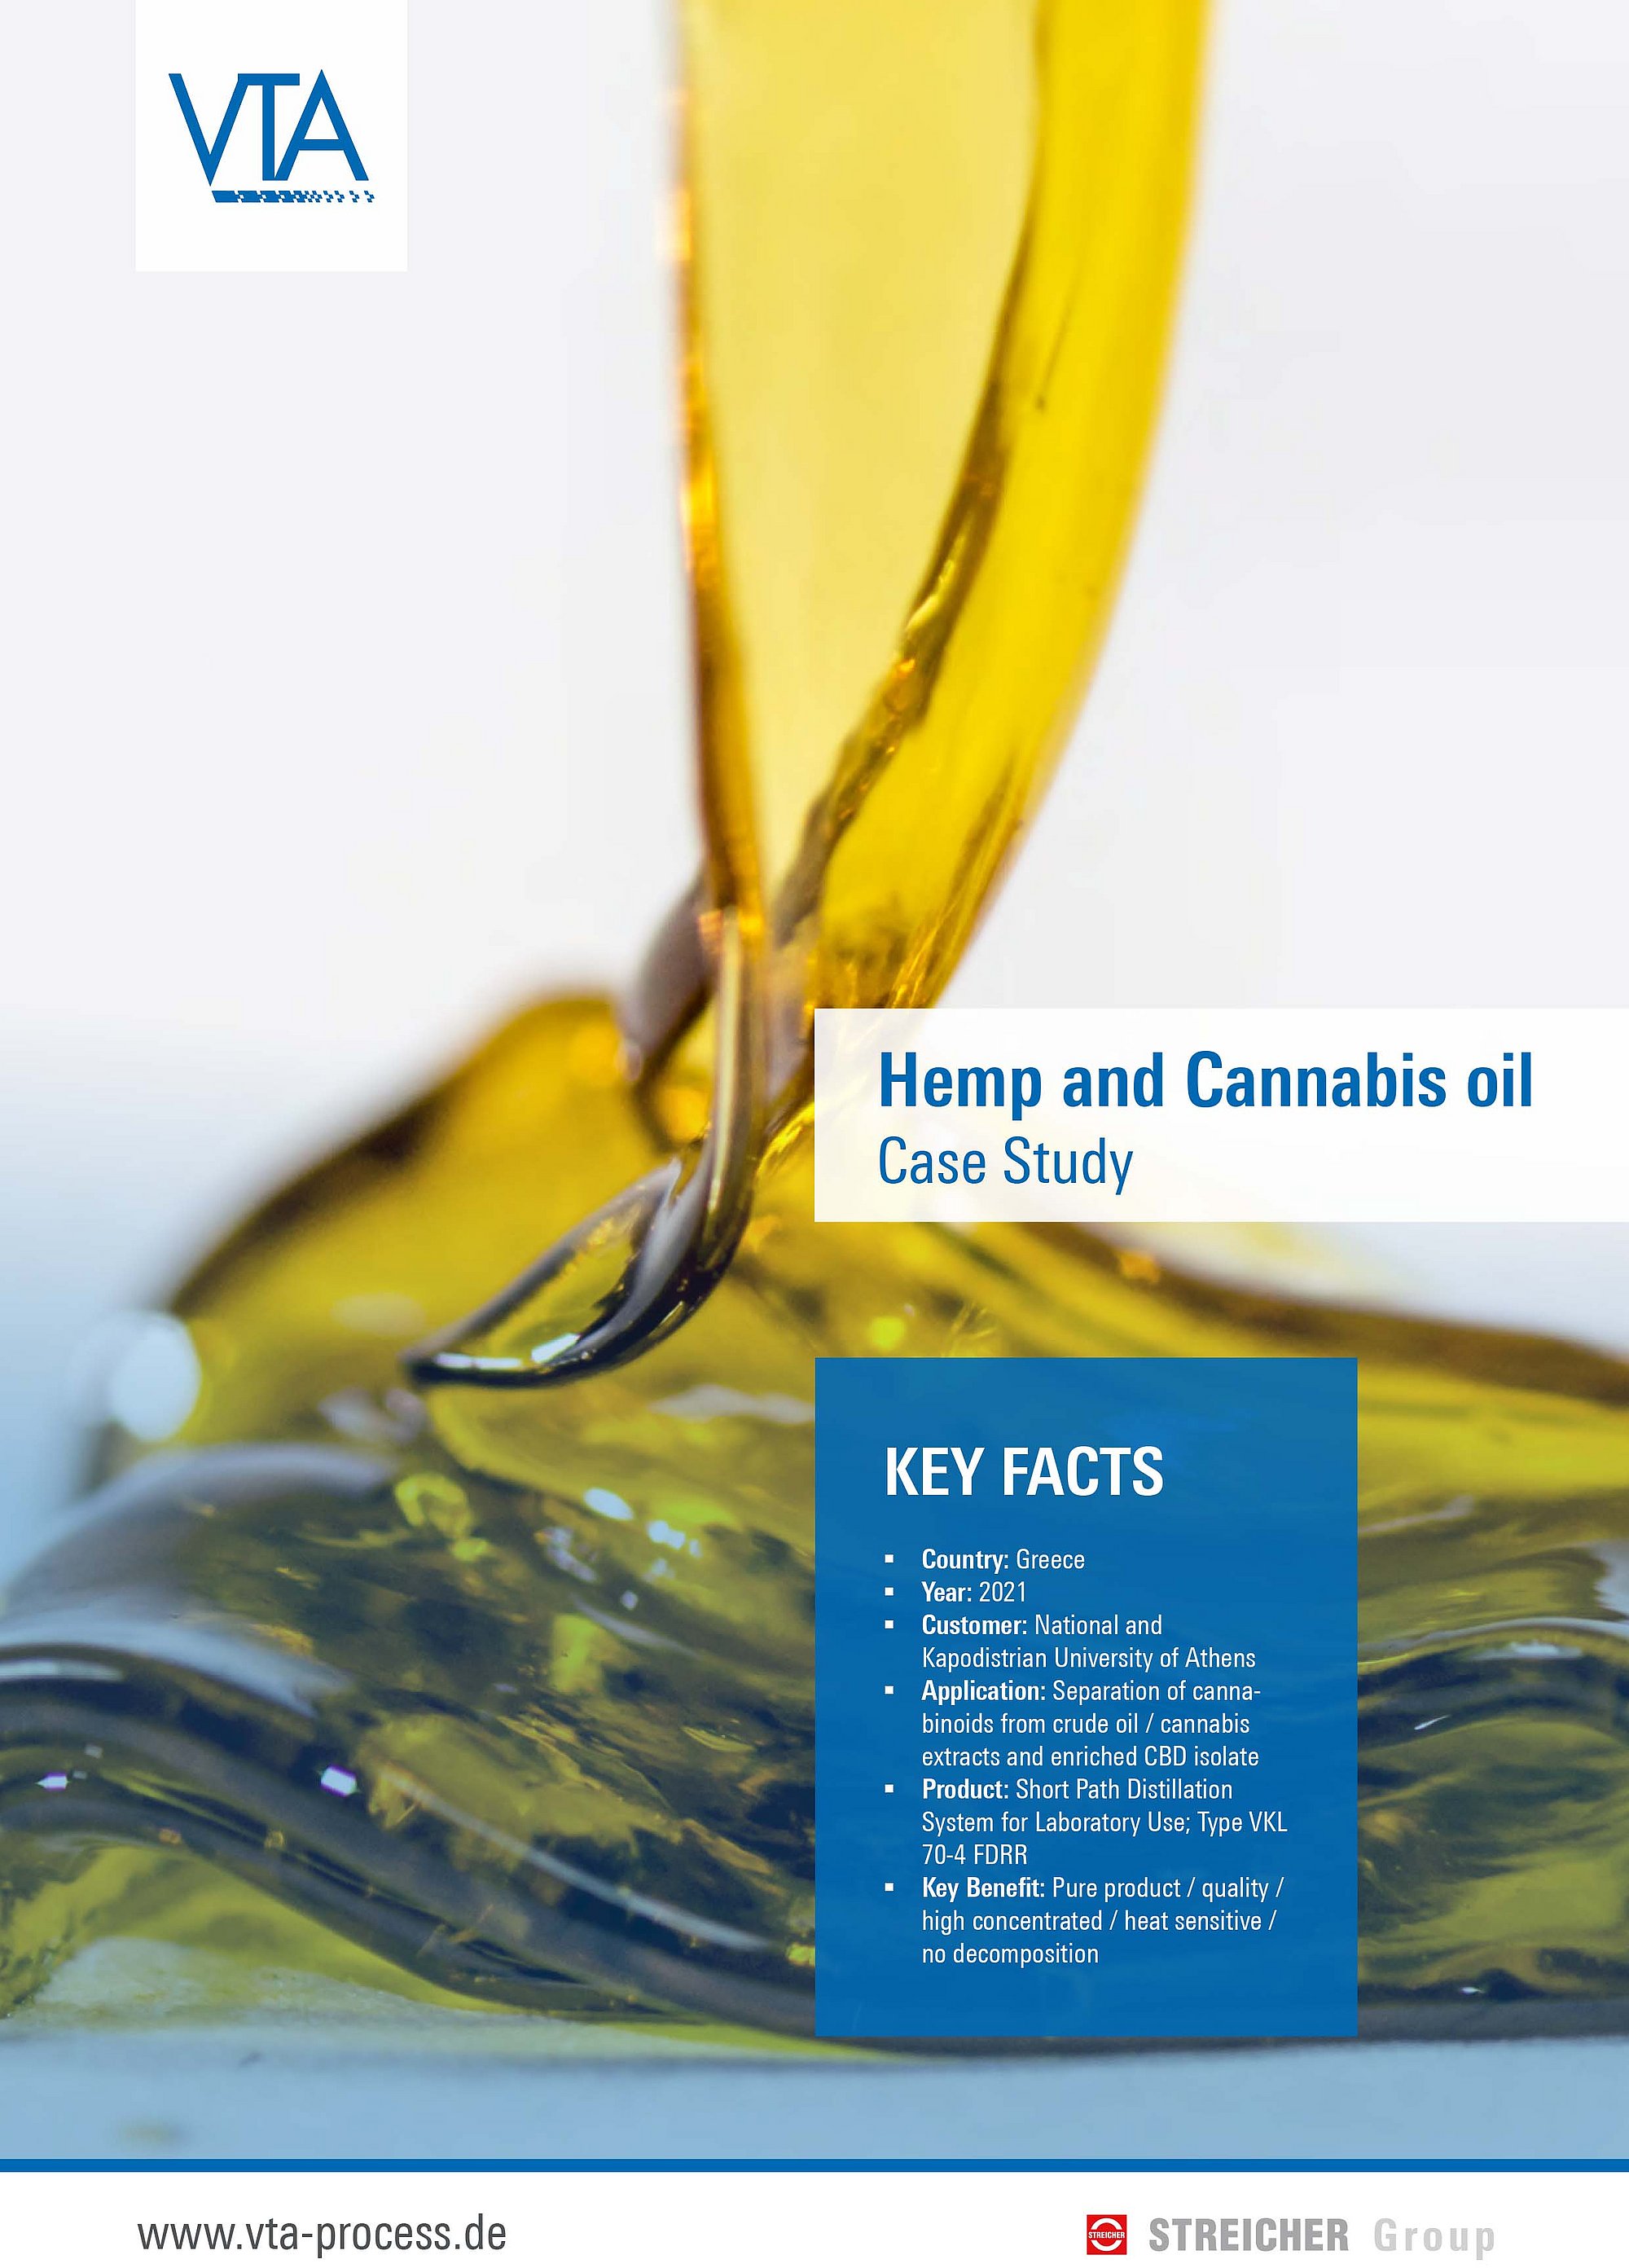 Case Study - Hemp and Cannabis oil